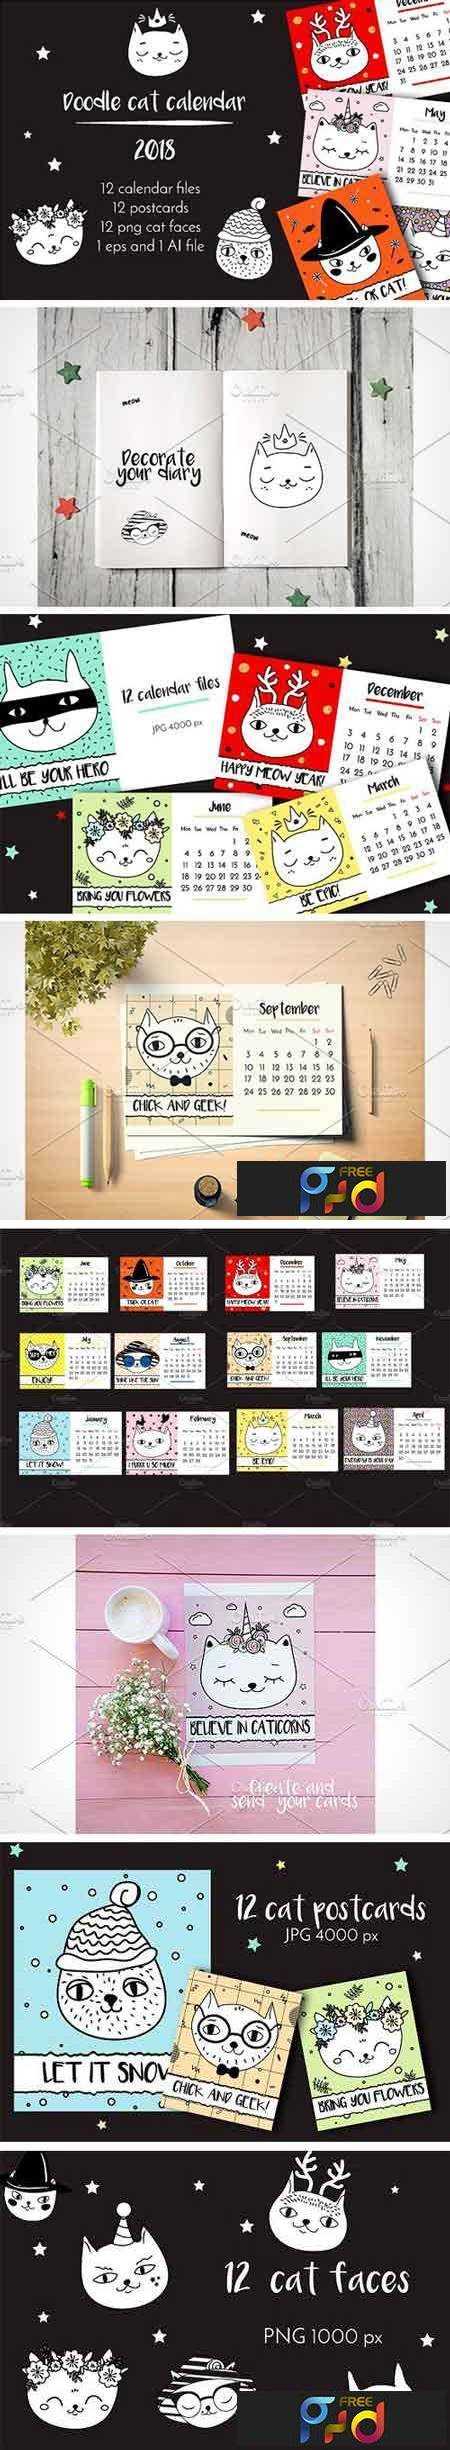 1708086 2018 Calendar Funny Doodle Cats 2010018 1